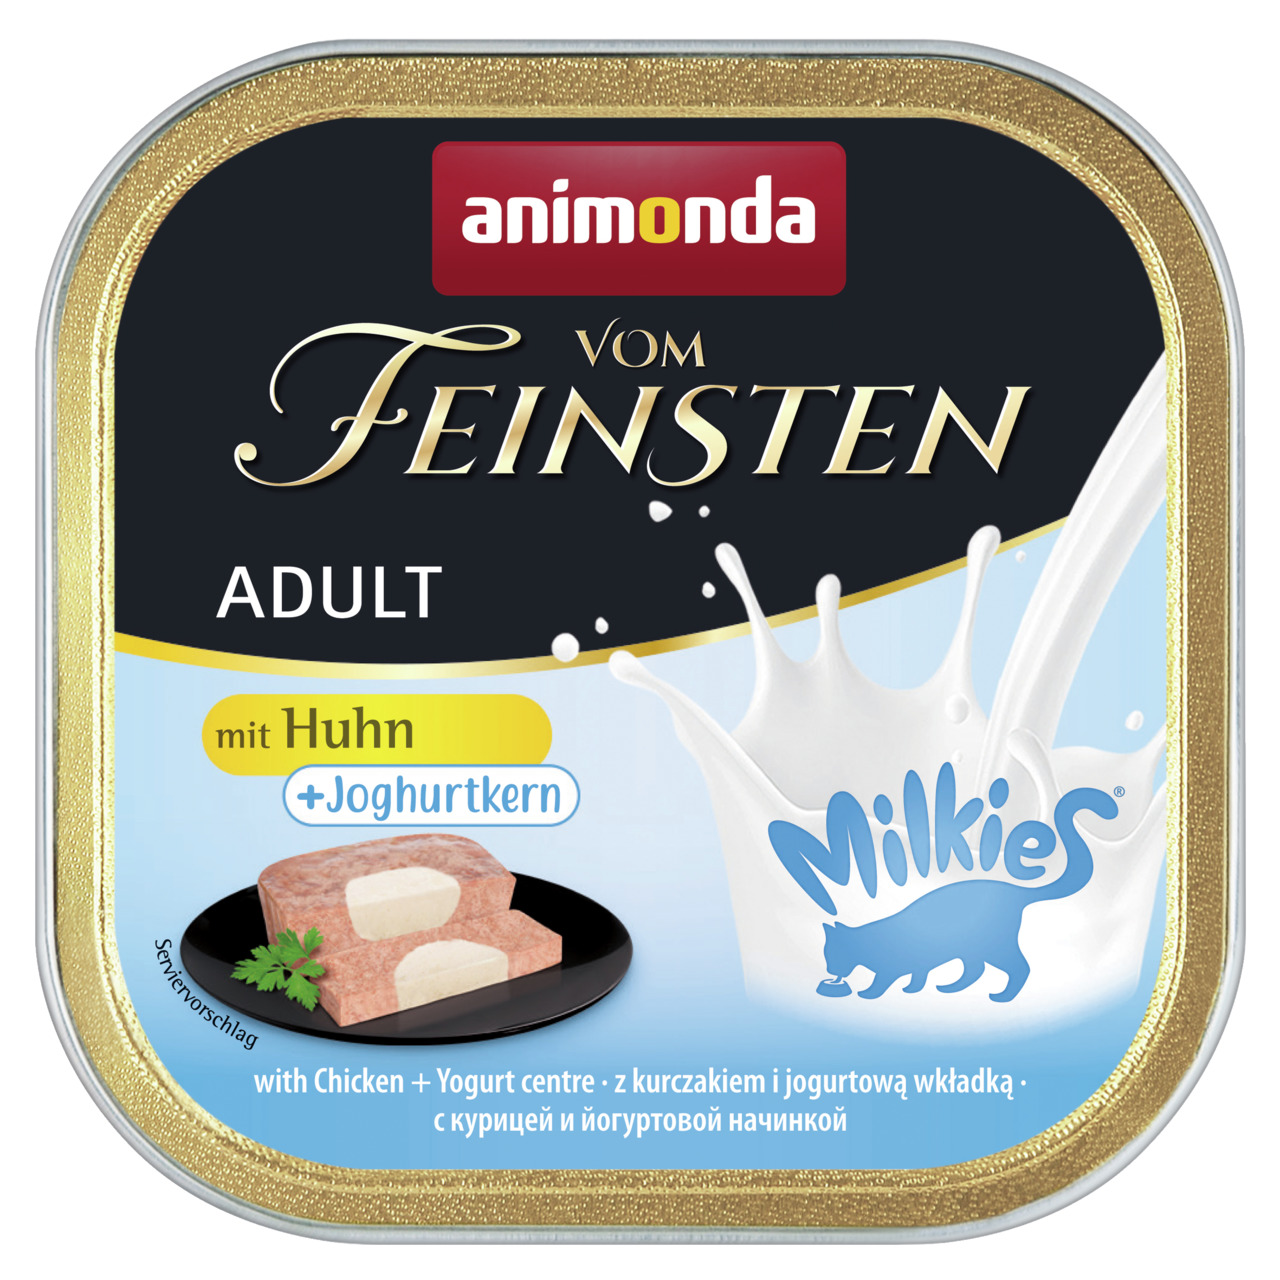 Animonda Vom Feinsten Adult mit Huhn + Joghurtkern Milkies Katzen Nassfutter 100 g